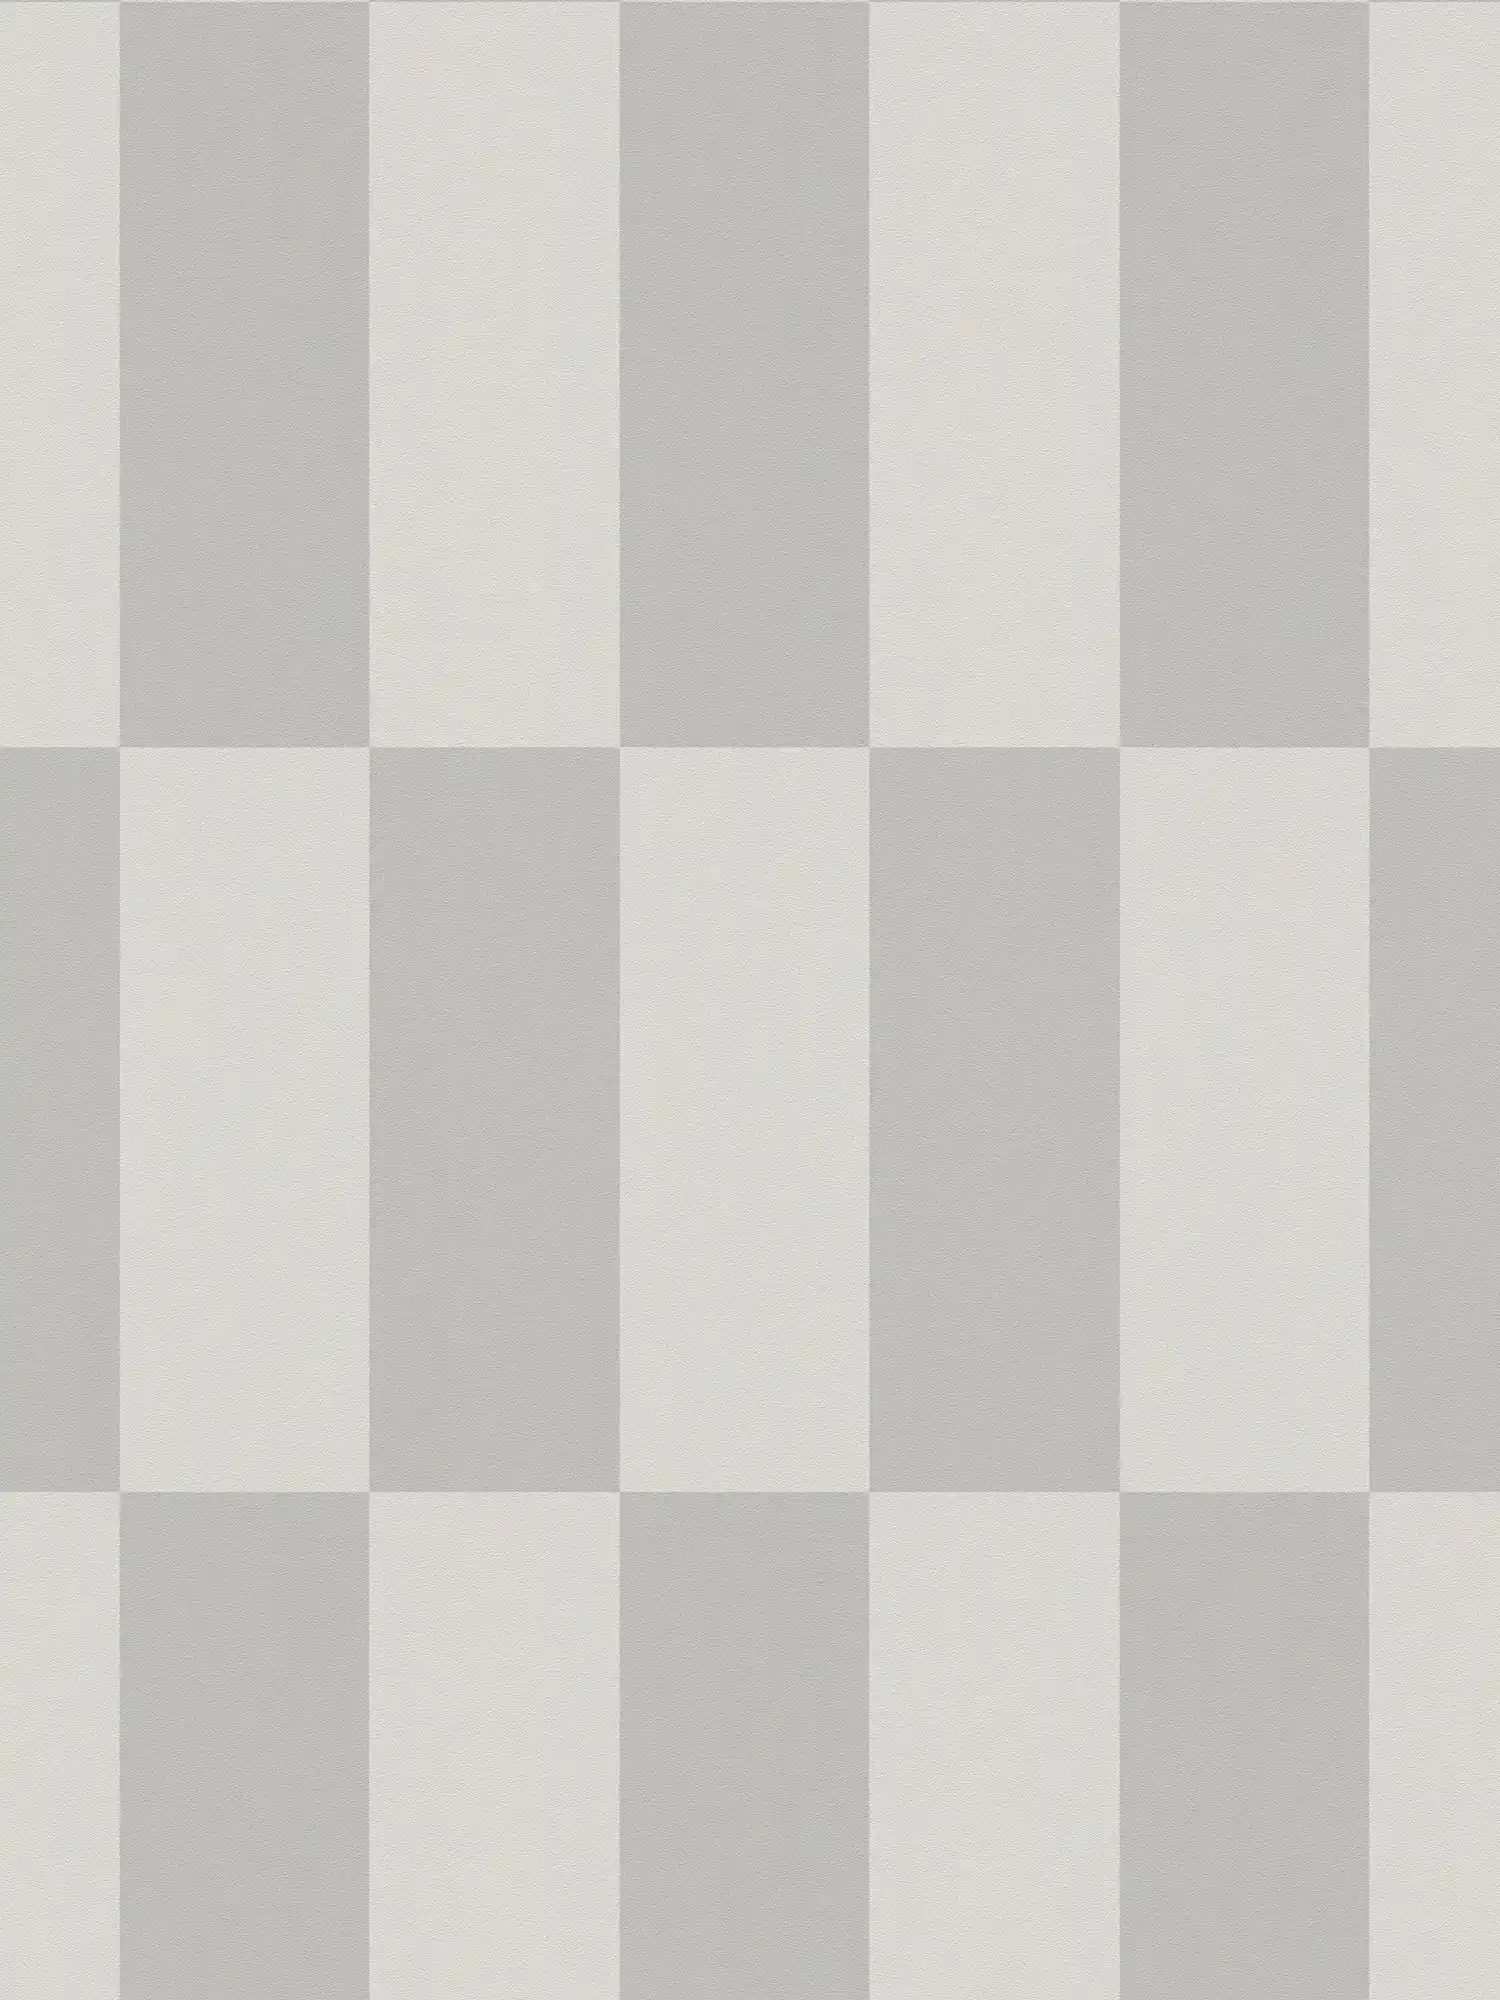         Vliesbehang met grafisch vierkant patroon - grijs
    